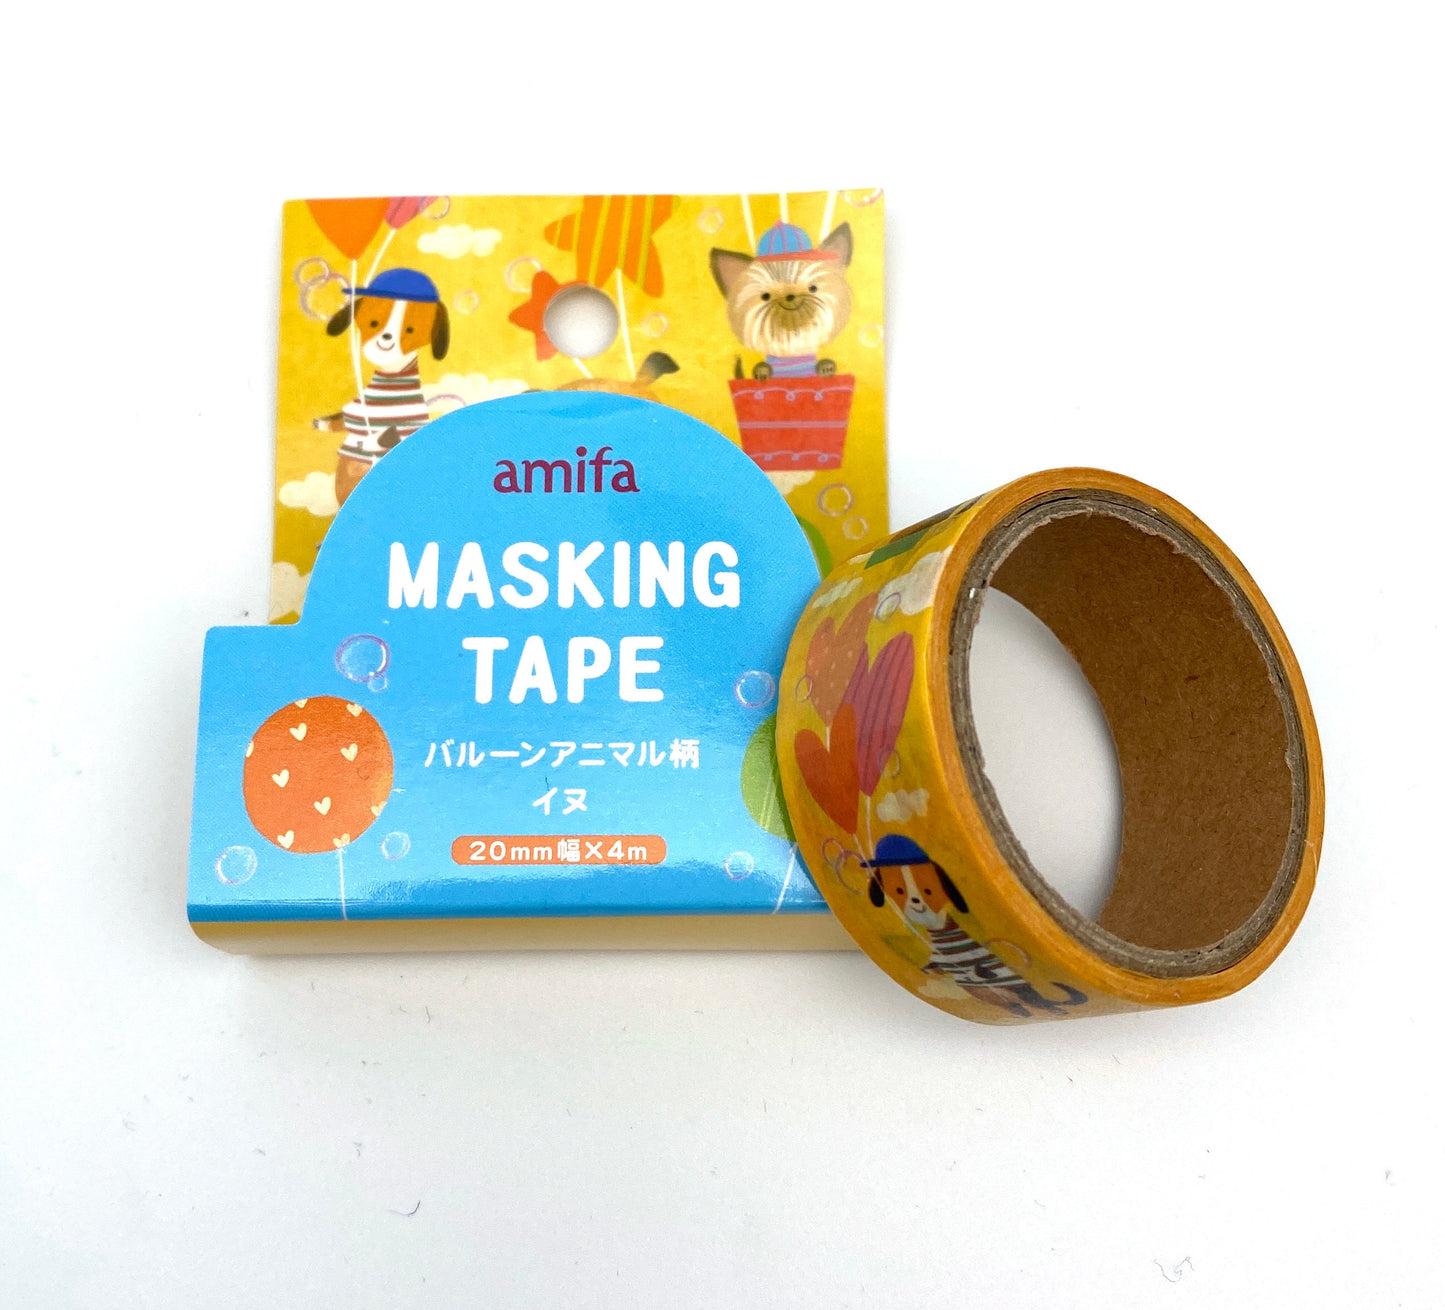 Hunde Bären - Washi Tape/Masking Tape